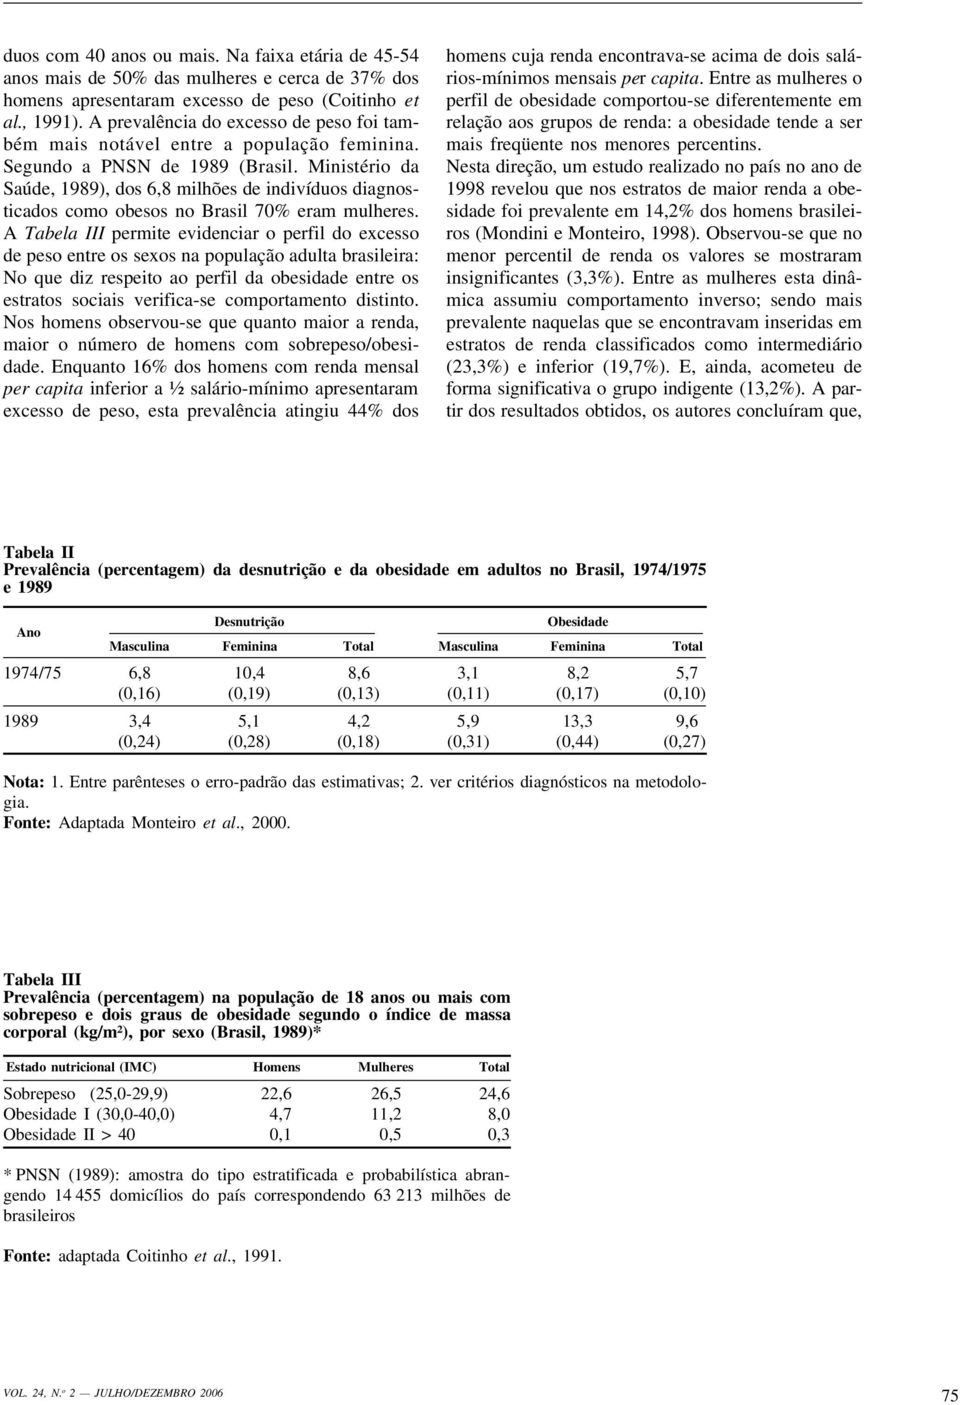 Ministério da Saúde, 1989), dos 6,8 milhões de indivíduos diagnosticados como obesos no Brasil 70% eram mulheres.